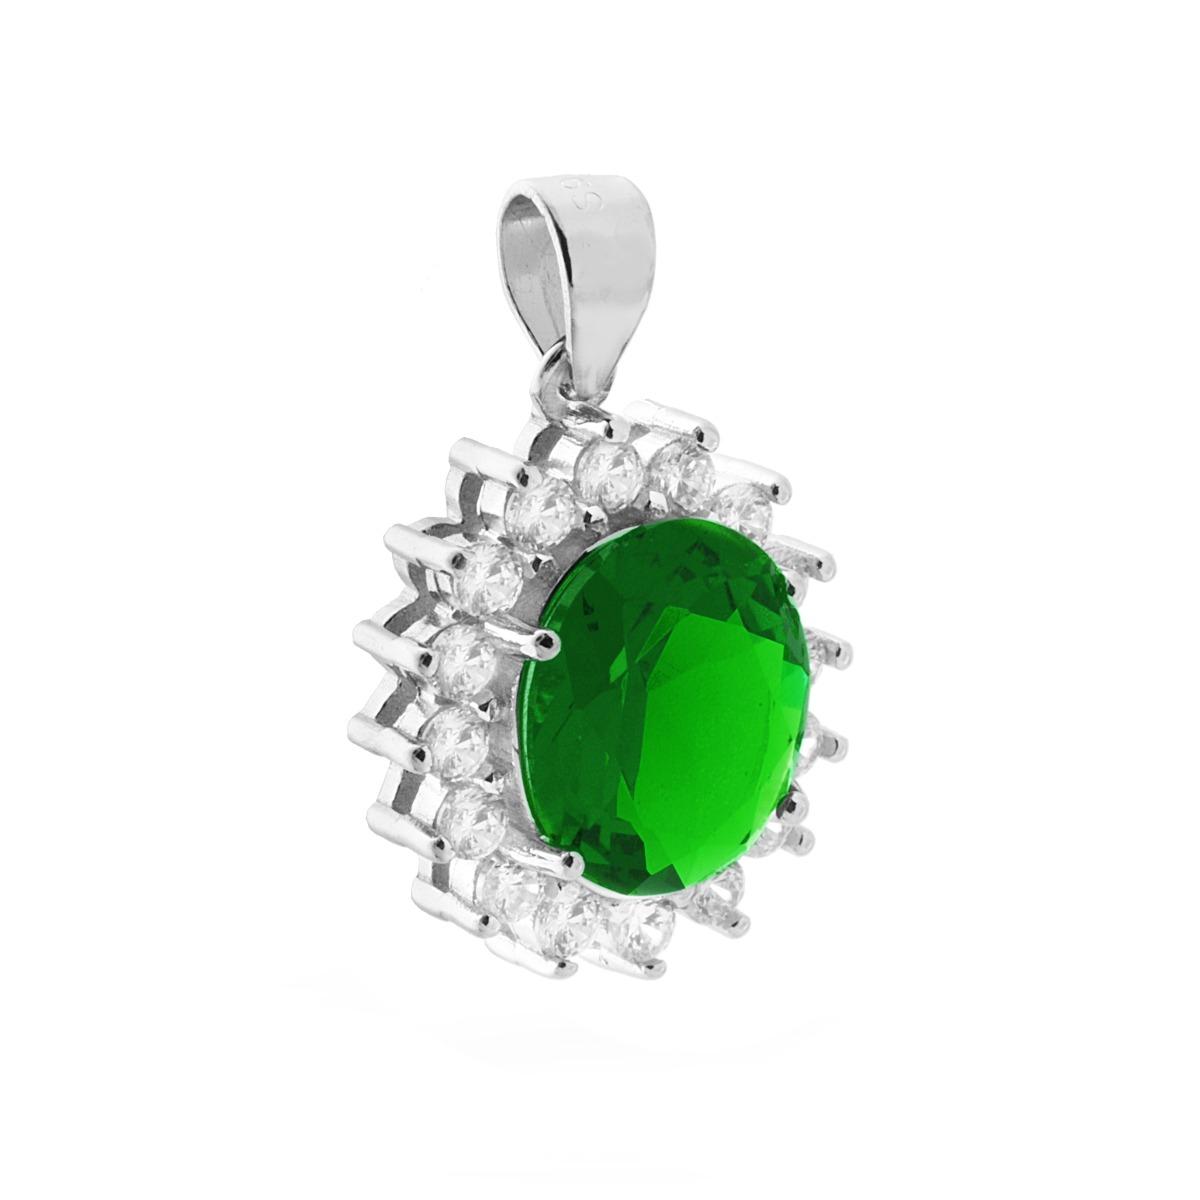 Ciondolo con Zircone Ovale Verde Smeraldo contornato da Zirconi Bianchi in ARGENTO 925 Galvanica Rodio